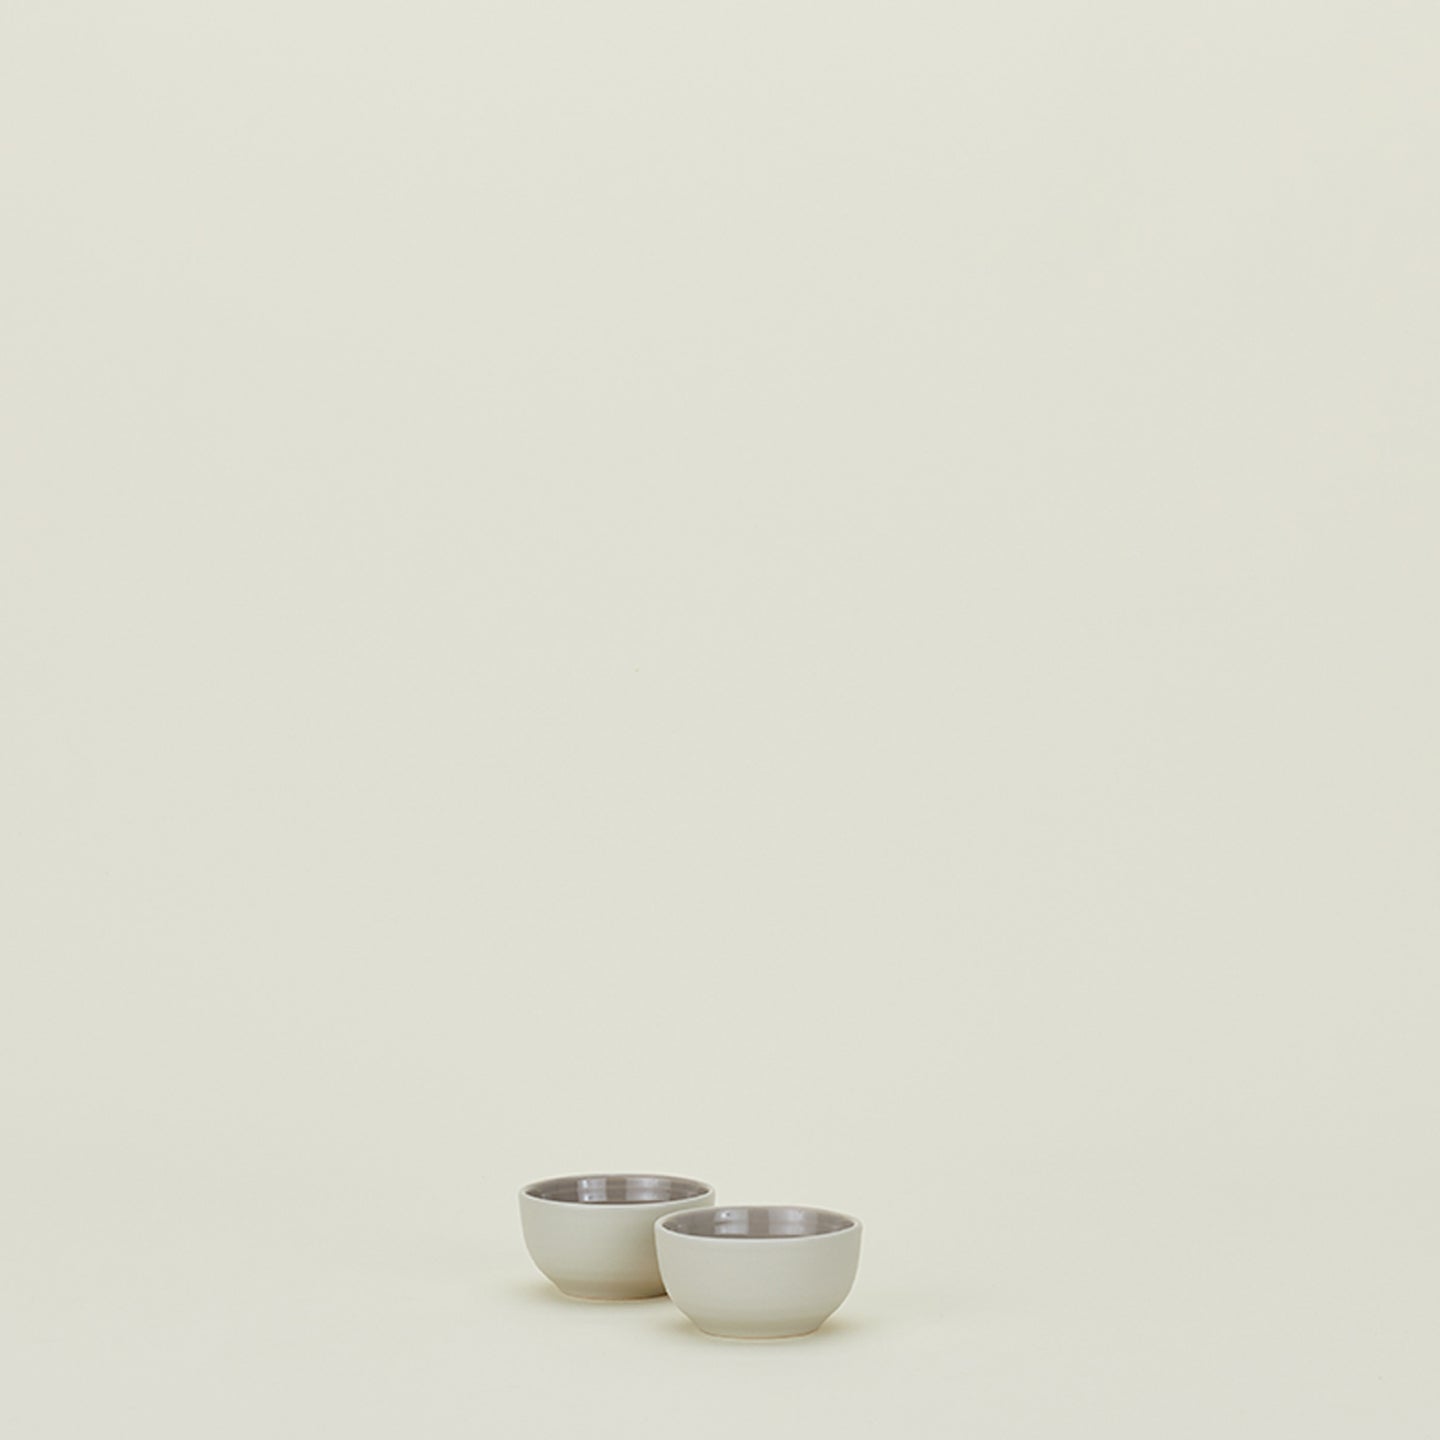 Essential Extra Small Bowl, Set of 2 - Light Grey